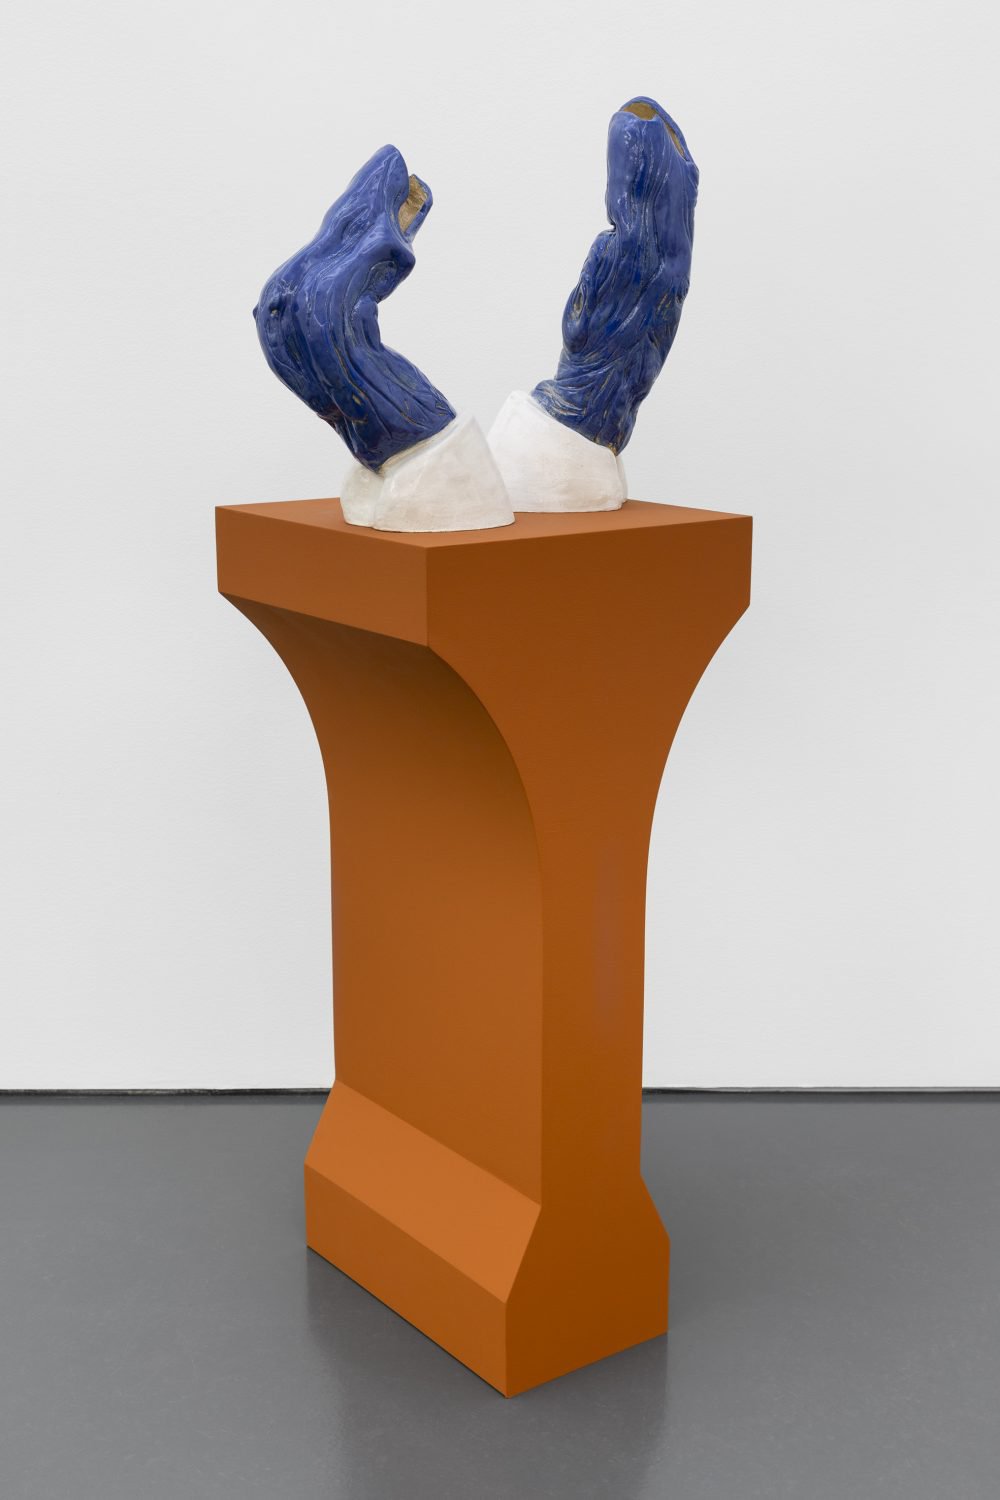 Lena HenkeLisbon 39º in the shade, 2020Glazed ceramic on custom made pedestal165 × 73 × 45 cm